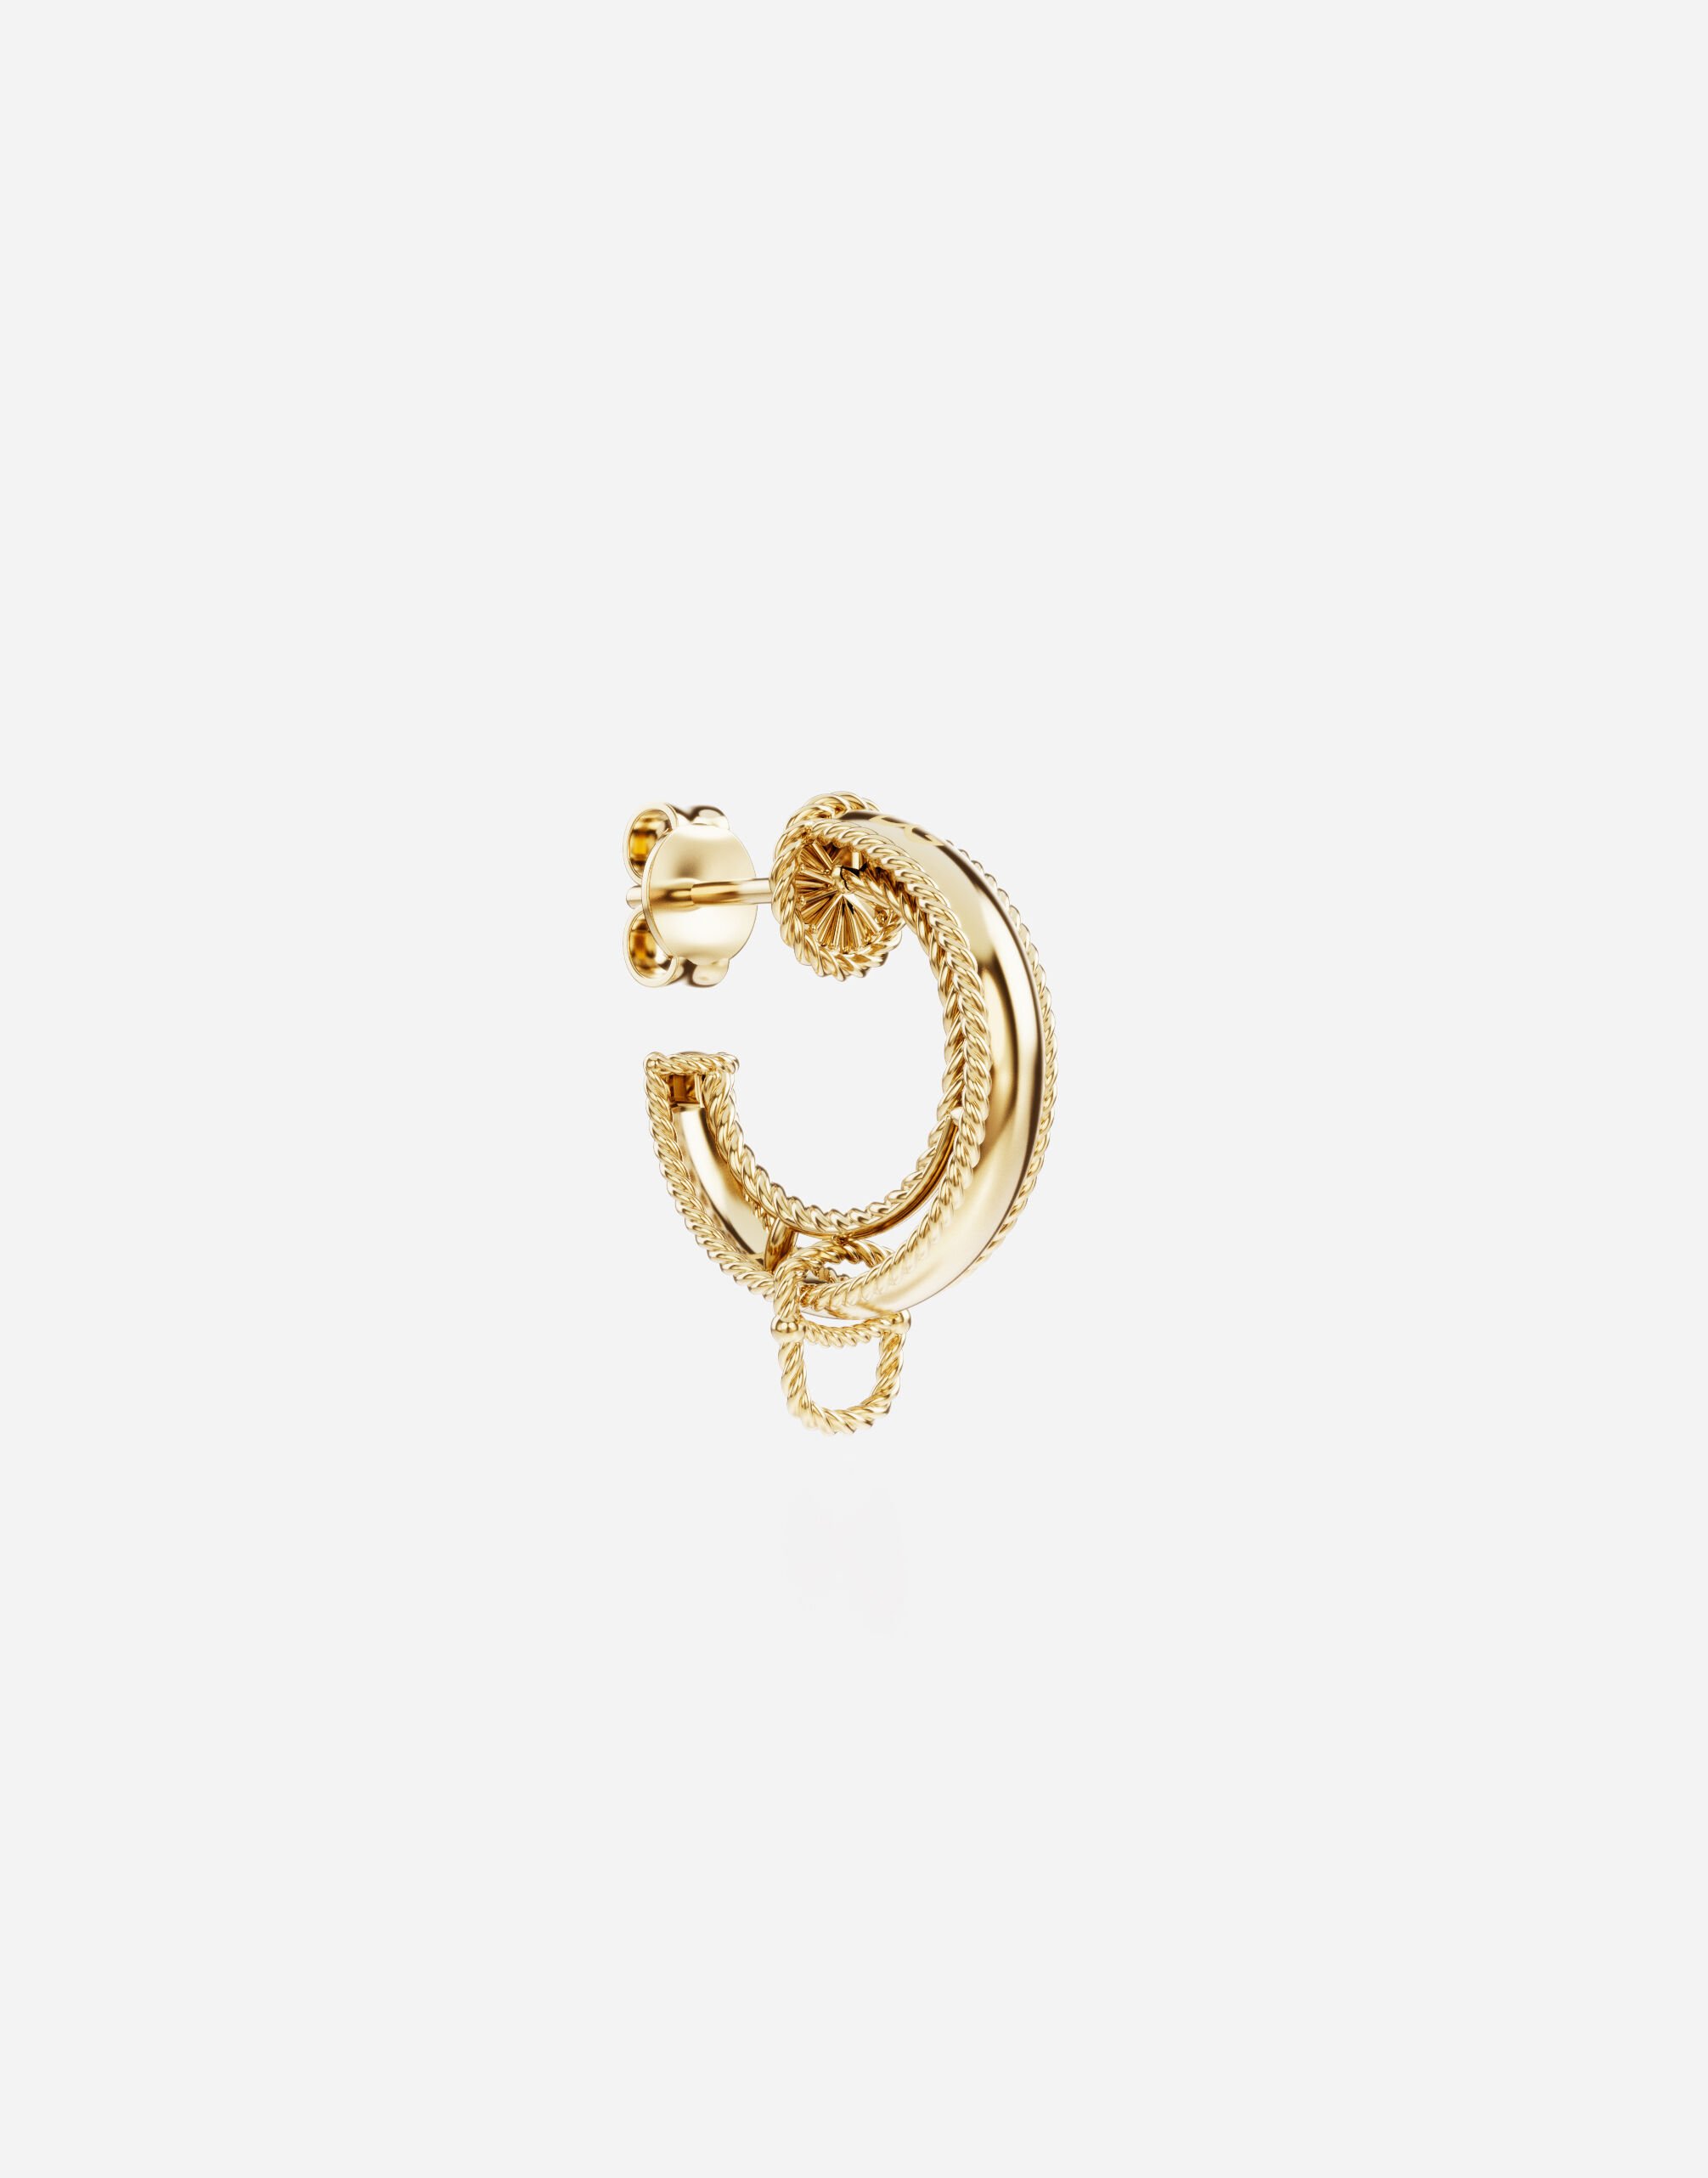 Dolce & Gabbana Rainbow Alphabet earring in yellow 18kt gold Yellow gold WAPR1GWMIX6